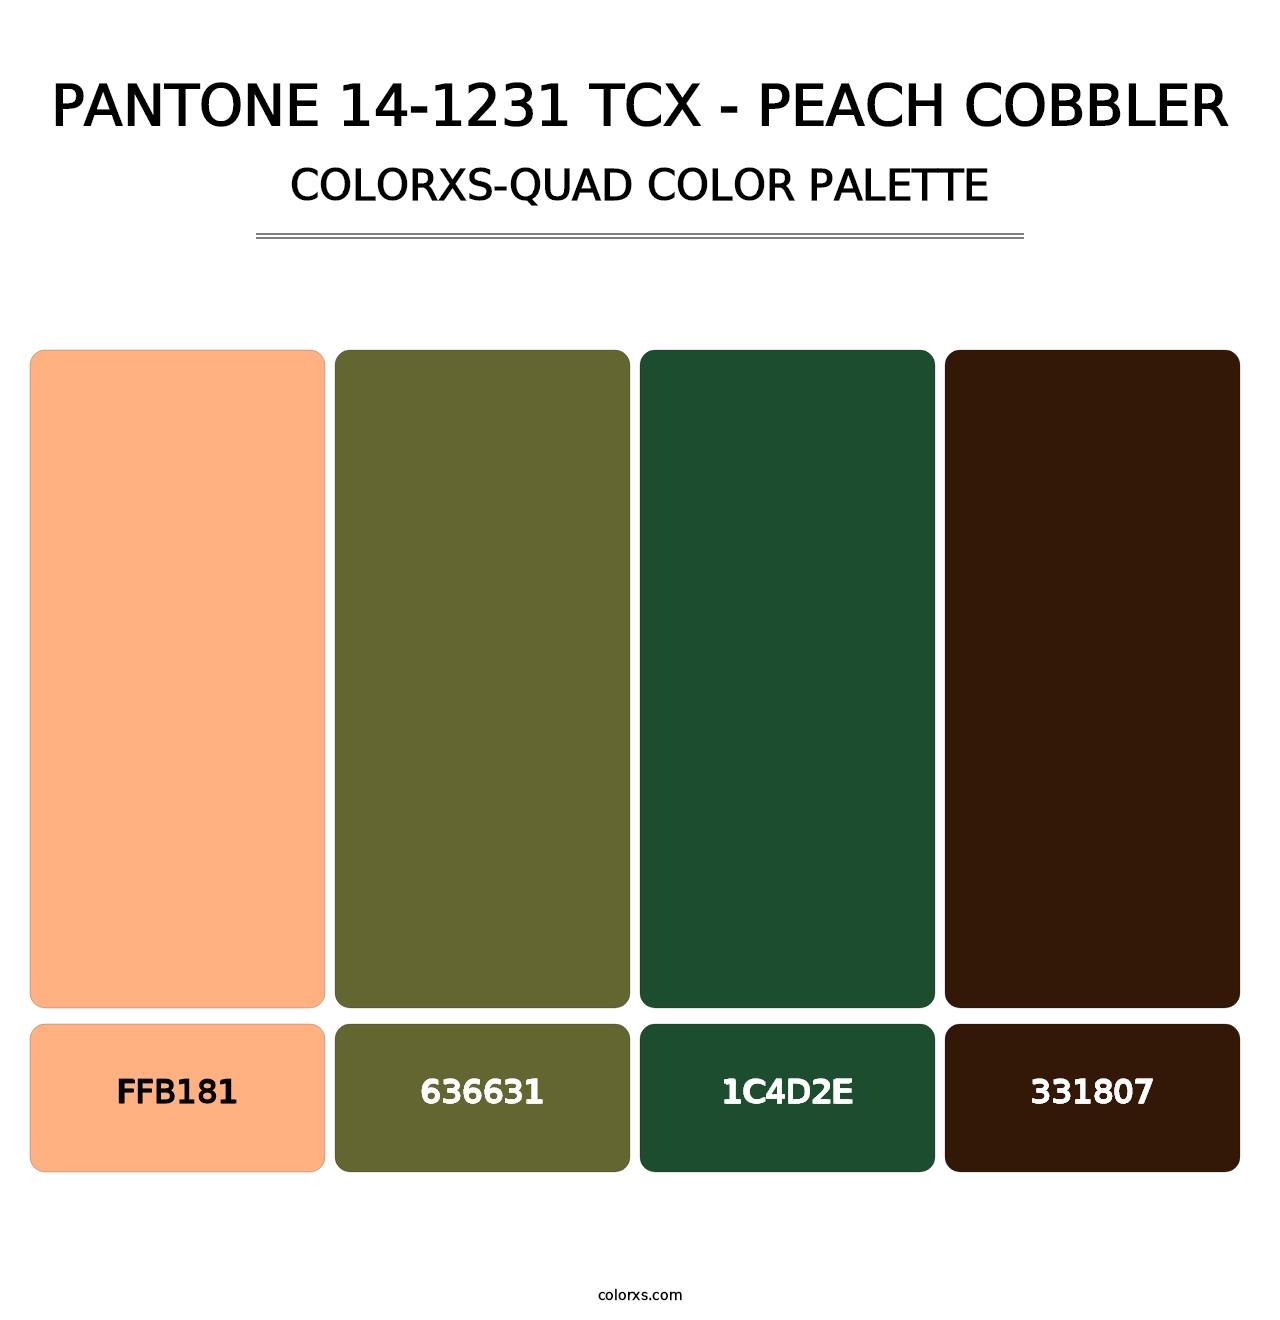 PANTONE 14-1231 TCX - Peach Cobbler - Colorxs Quad Palette